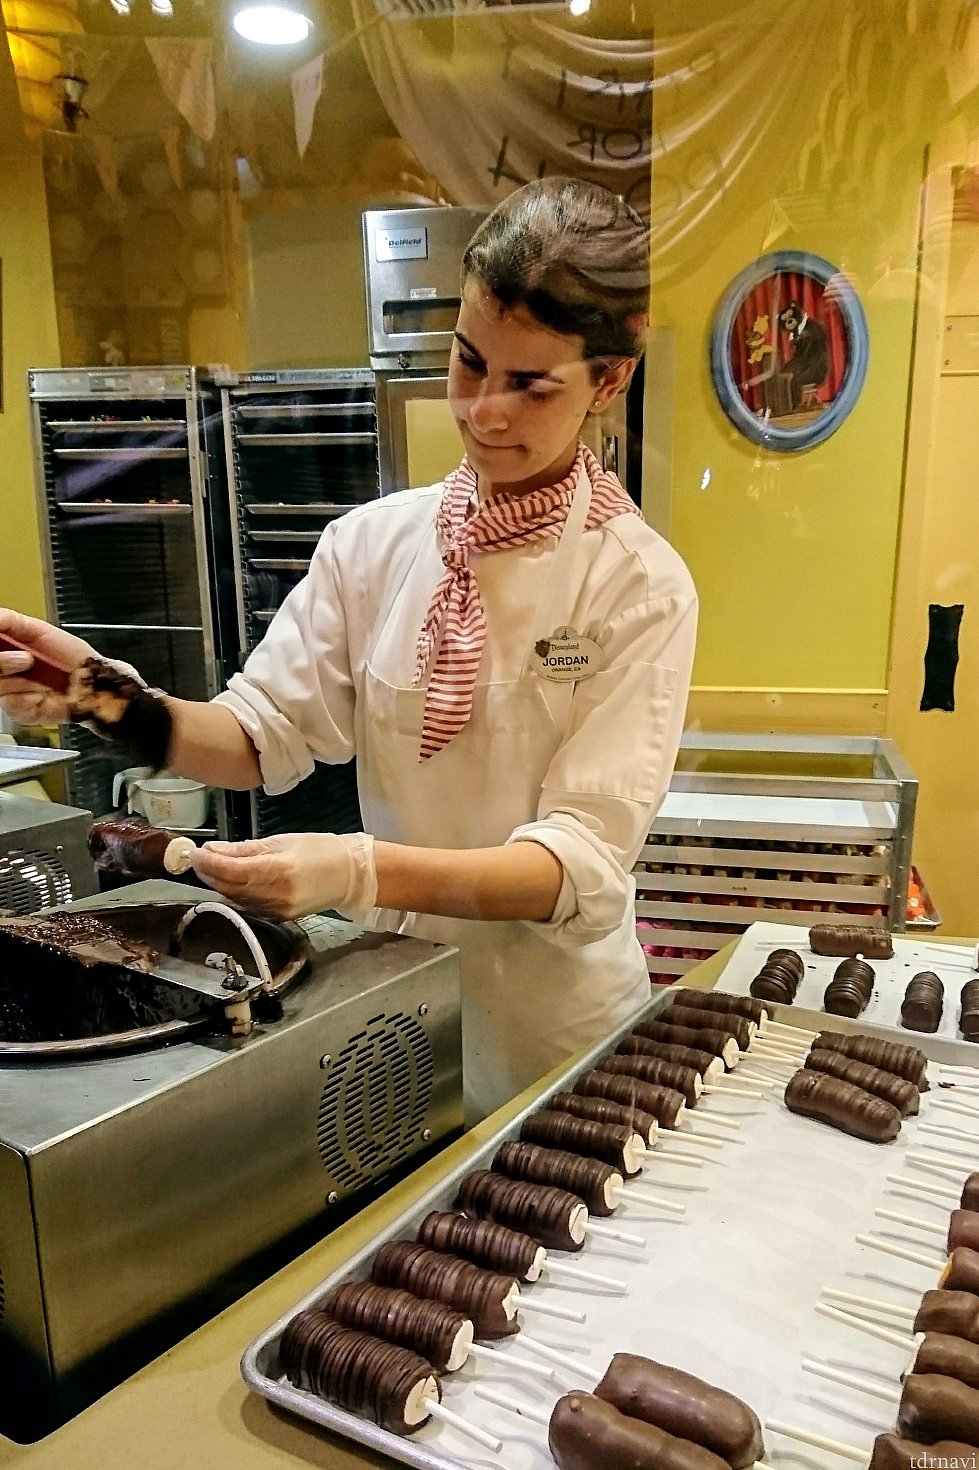 こちらはプーさんのお店<br>
パティシエのキャストさんがお菓子を作っている様子がみられました (2018年 撮影)